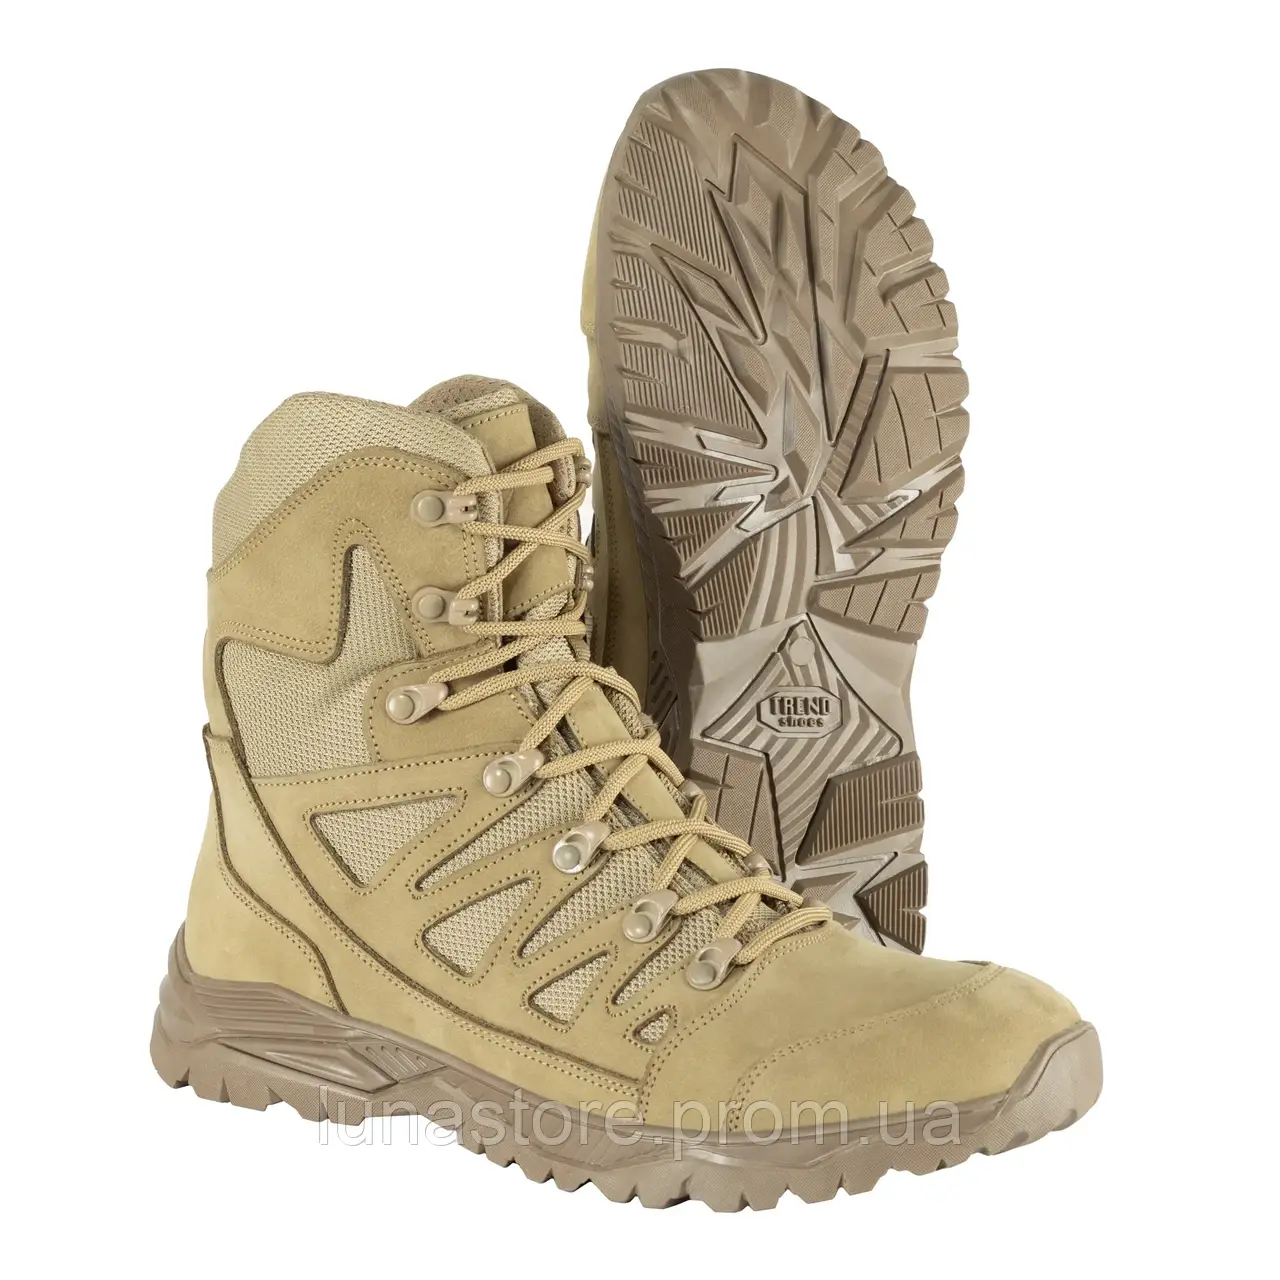 Тактичні черевики пісок, військові армійські штурмові теплі берці з мембраною вологостійкі для військових ВСК